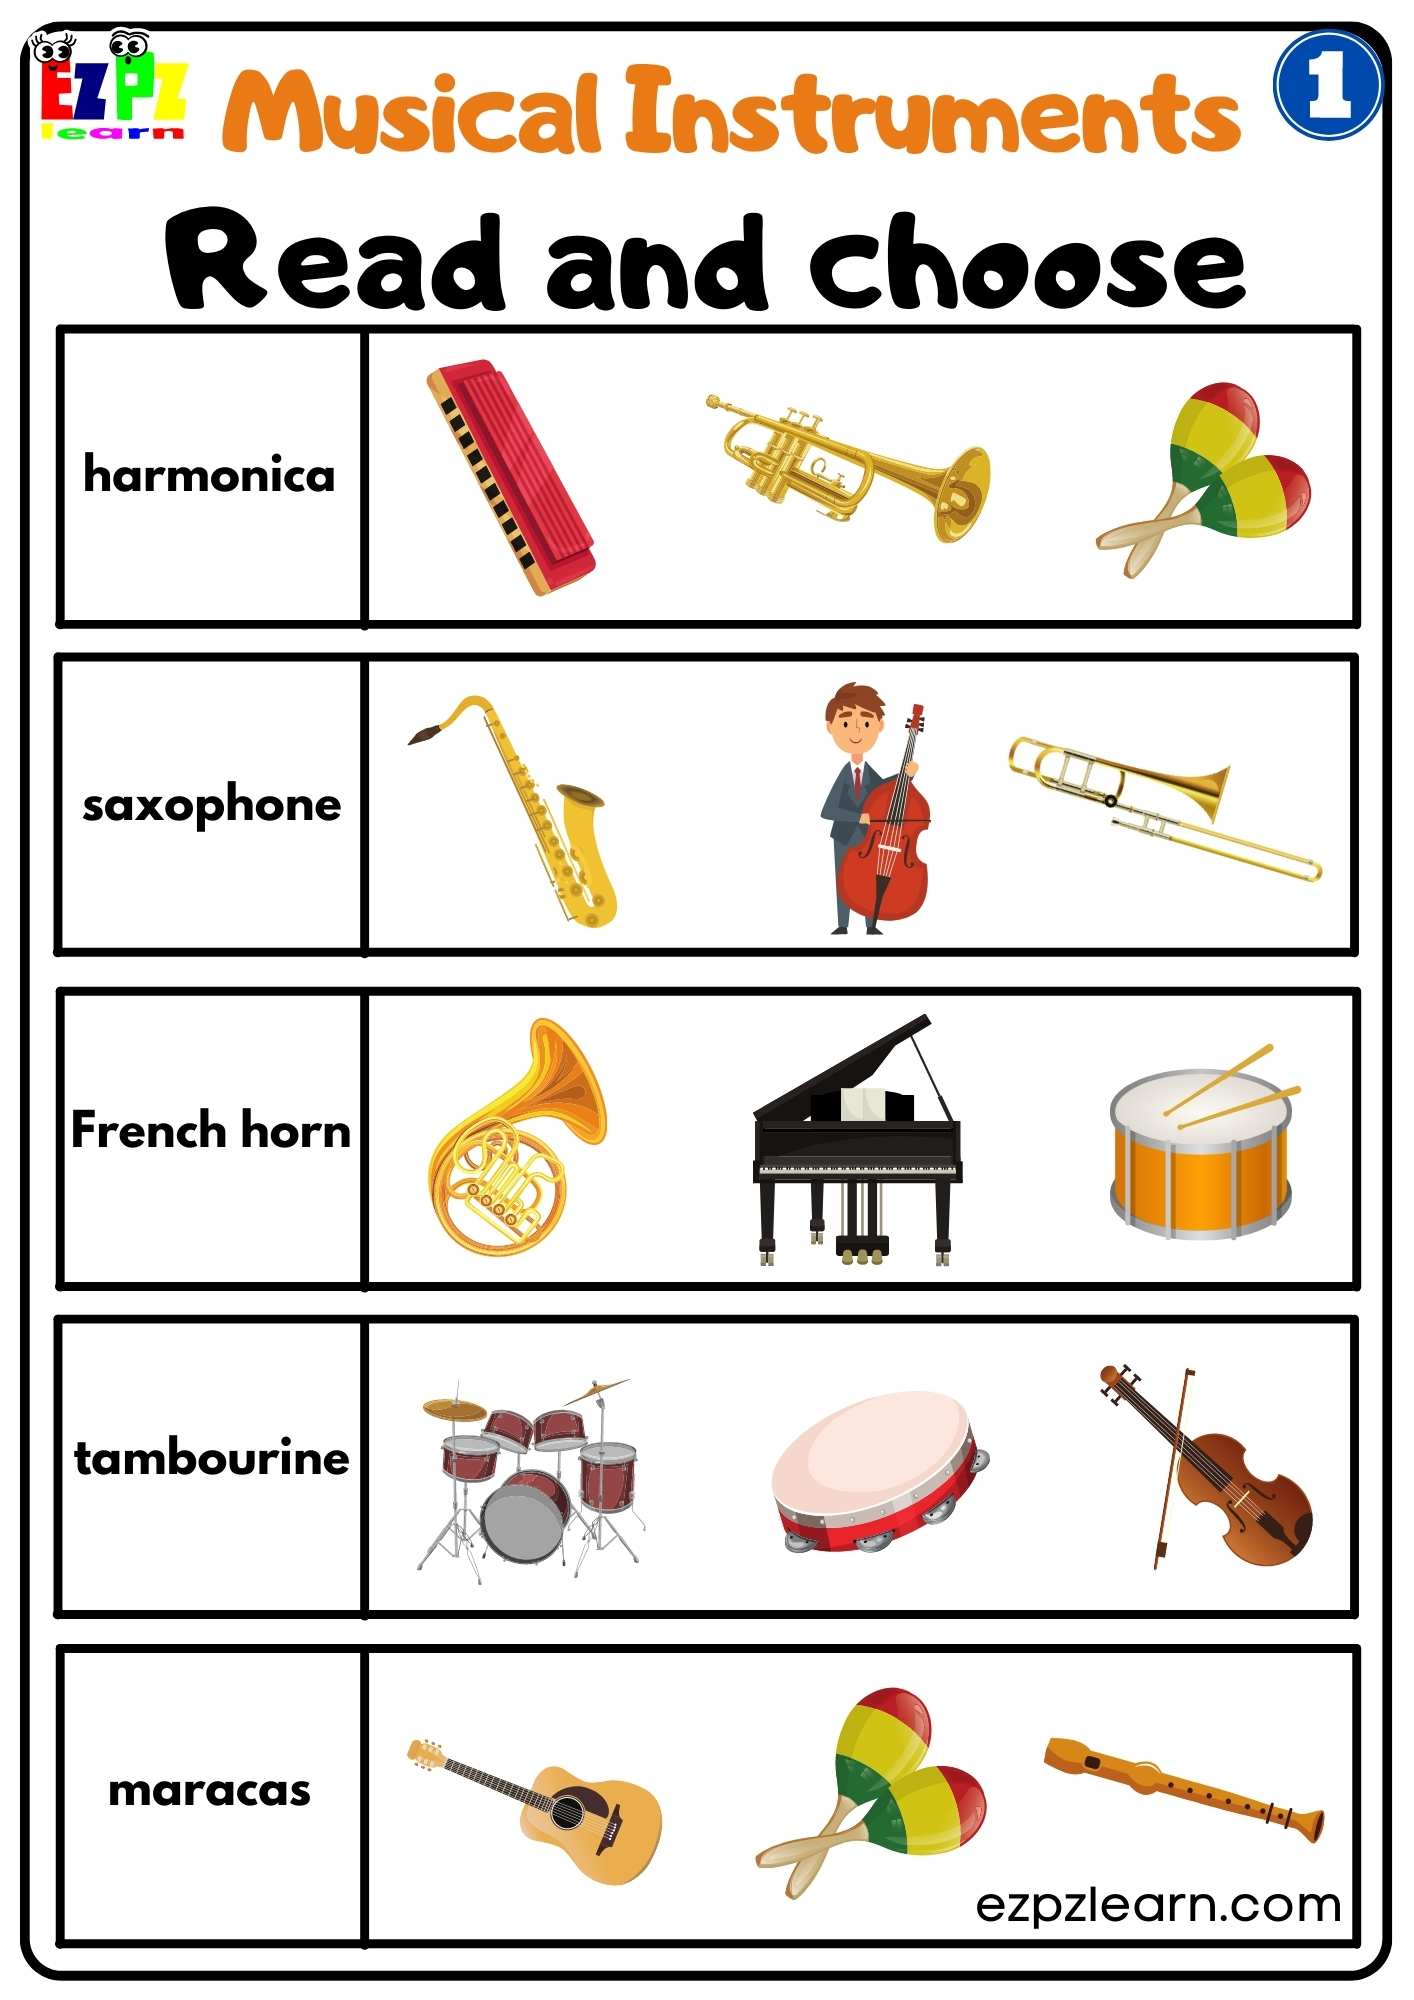 musical-instruments-ezpzlearn